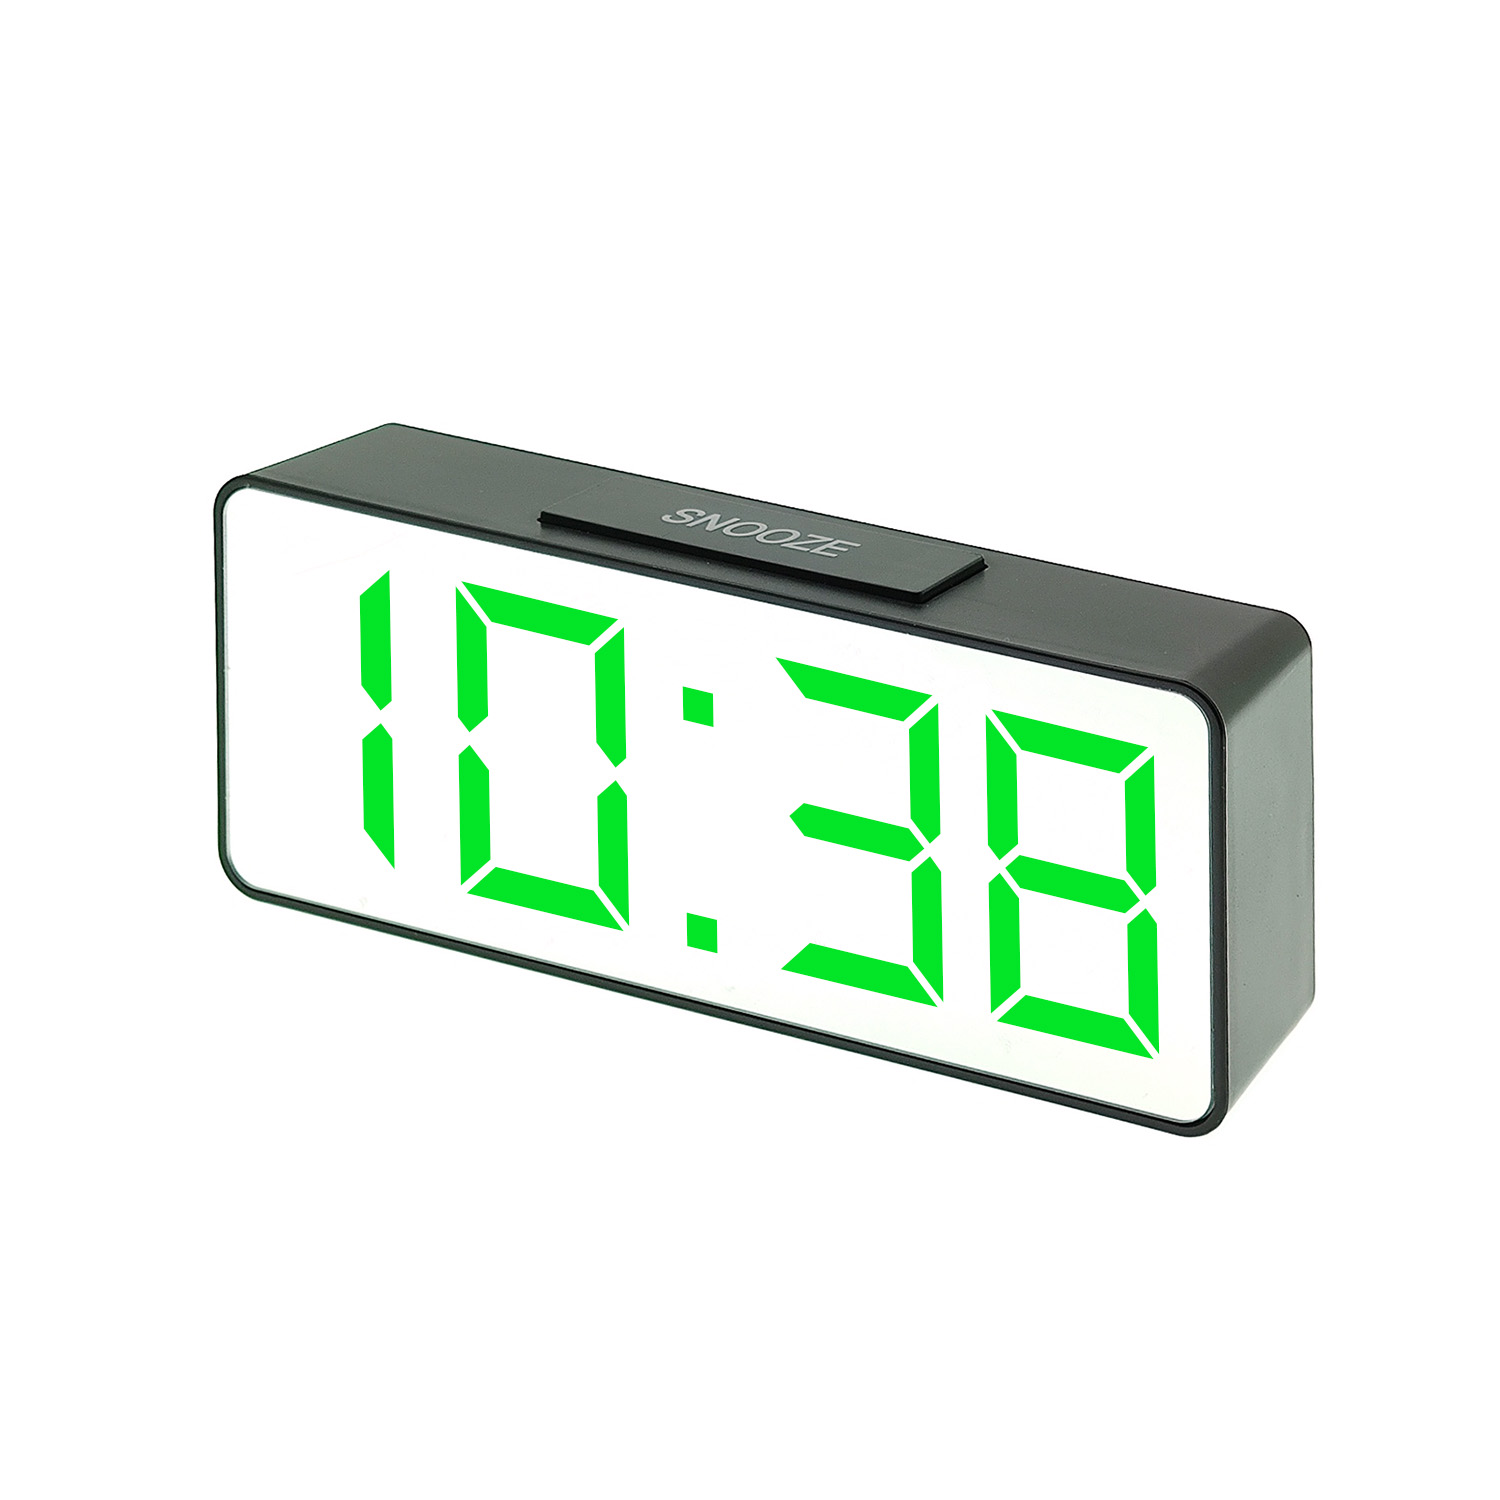 часы настольные VST-886/4 (зелёные) зеркальные+дата+температура  (без блока, питание от USB)